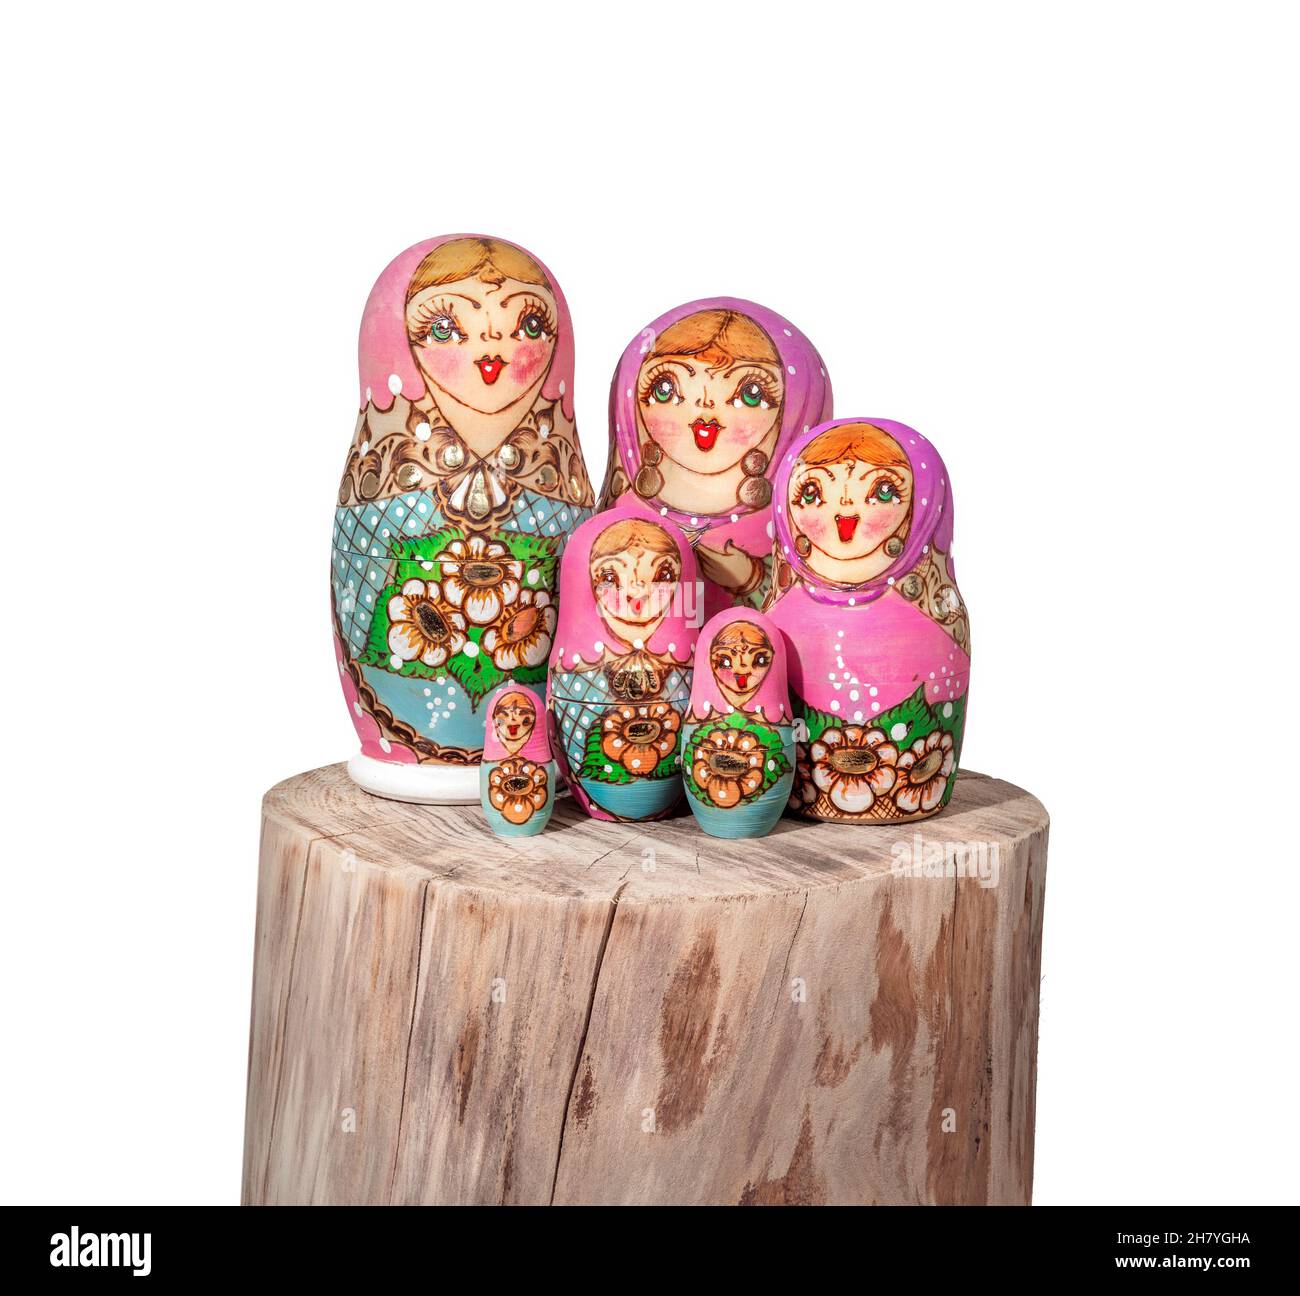 Poupées de babushka disposées sur bois.Groupe de poupées russes colorées  peintes en gerbage également connu sous le nom de poupée Matroska ou de  poupées russes de thé.Symbole de gra Photo Stock -